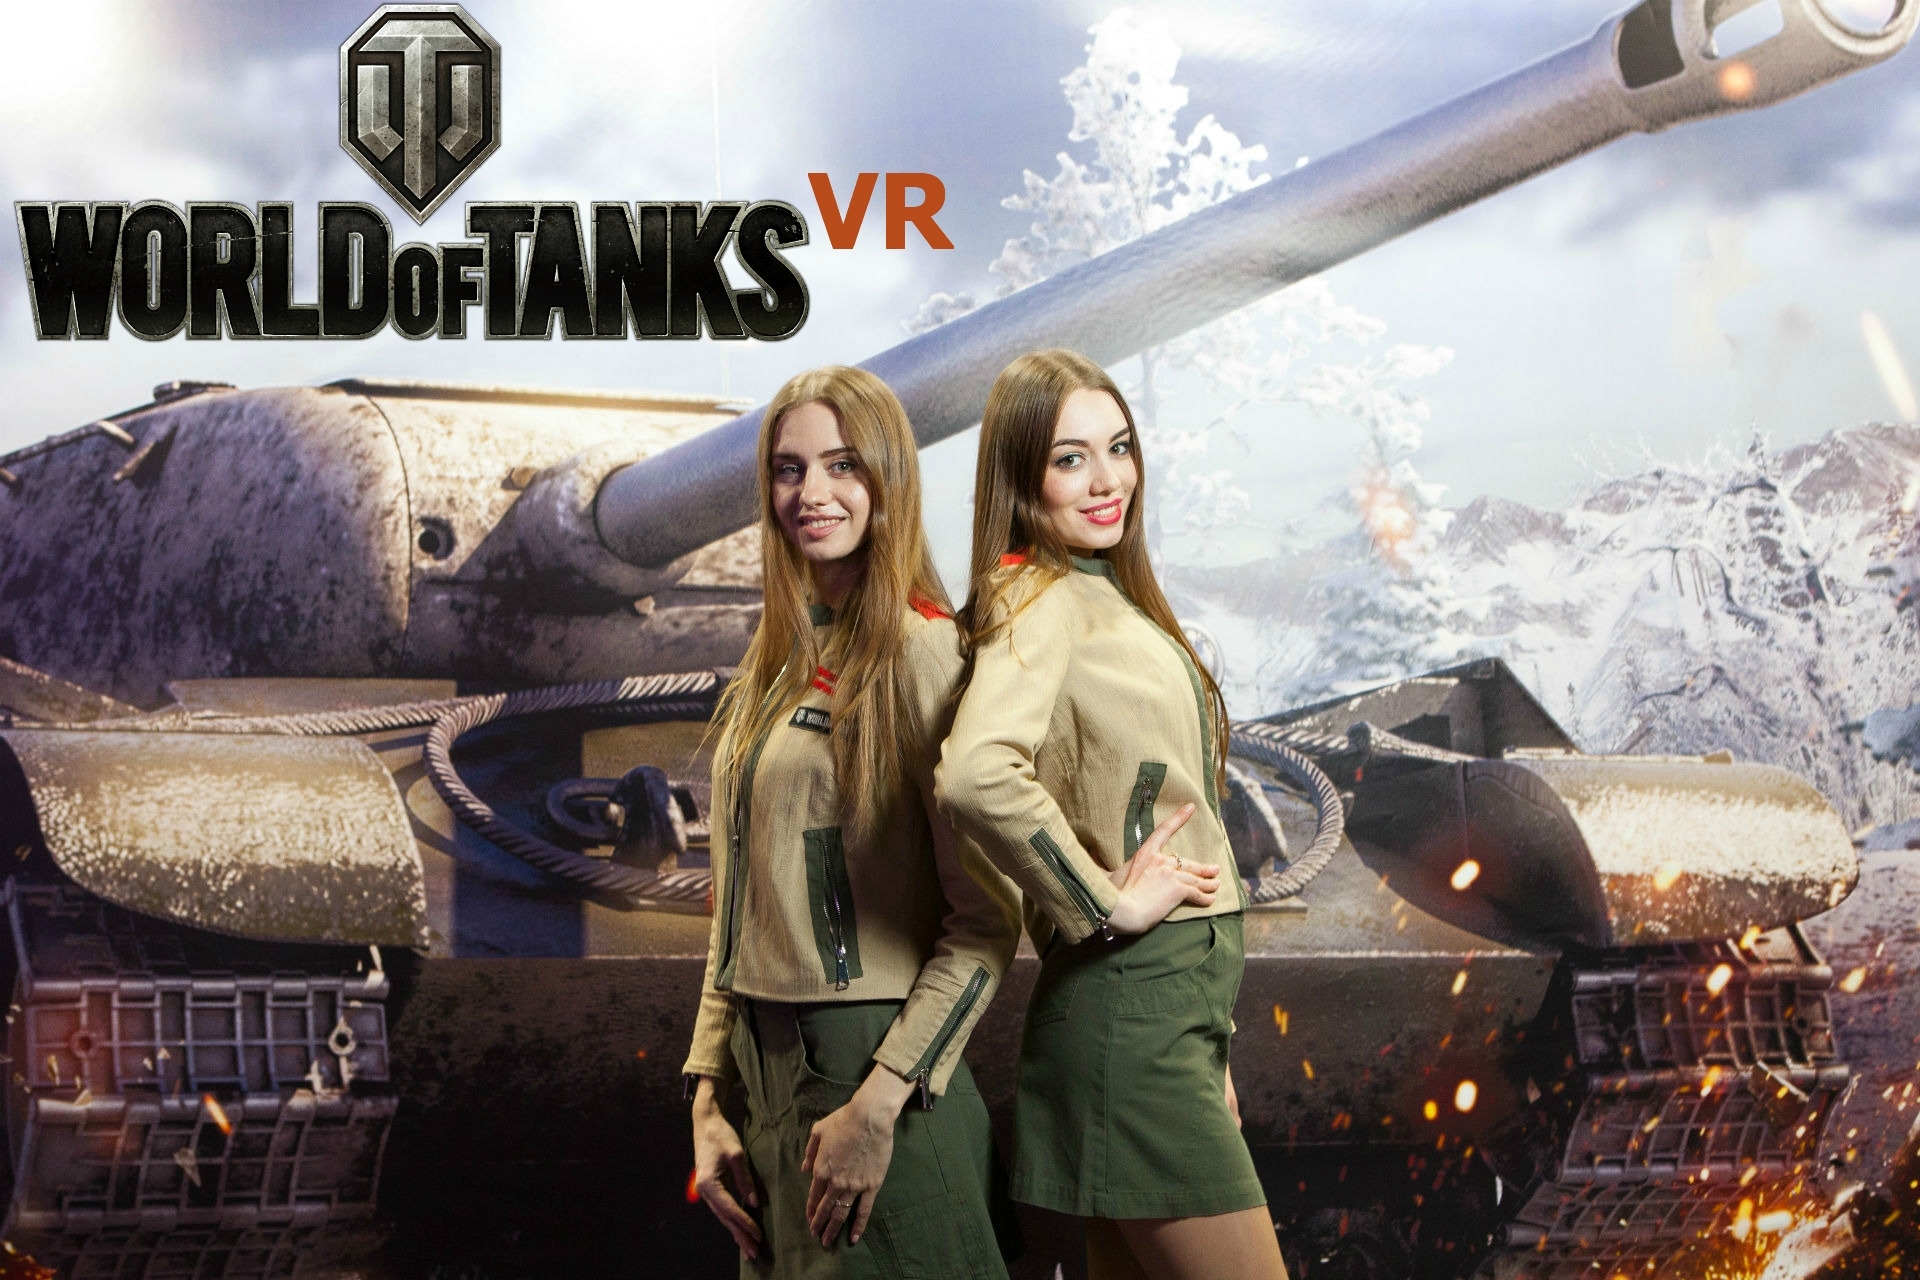 Статья Презентация игры World of Tanks VR